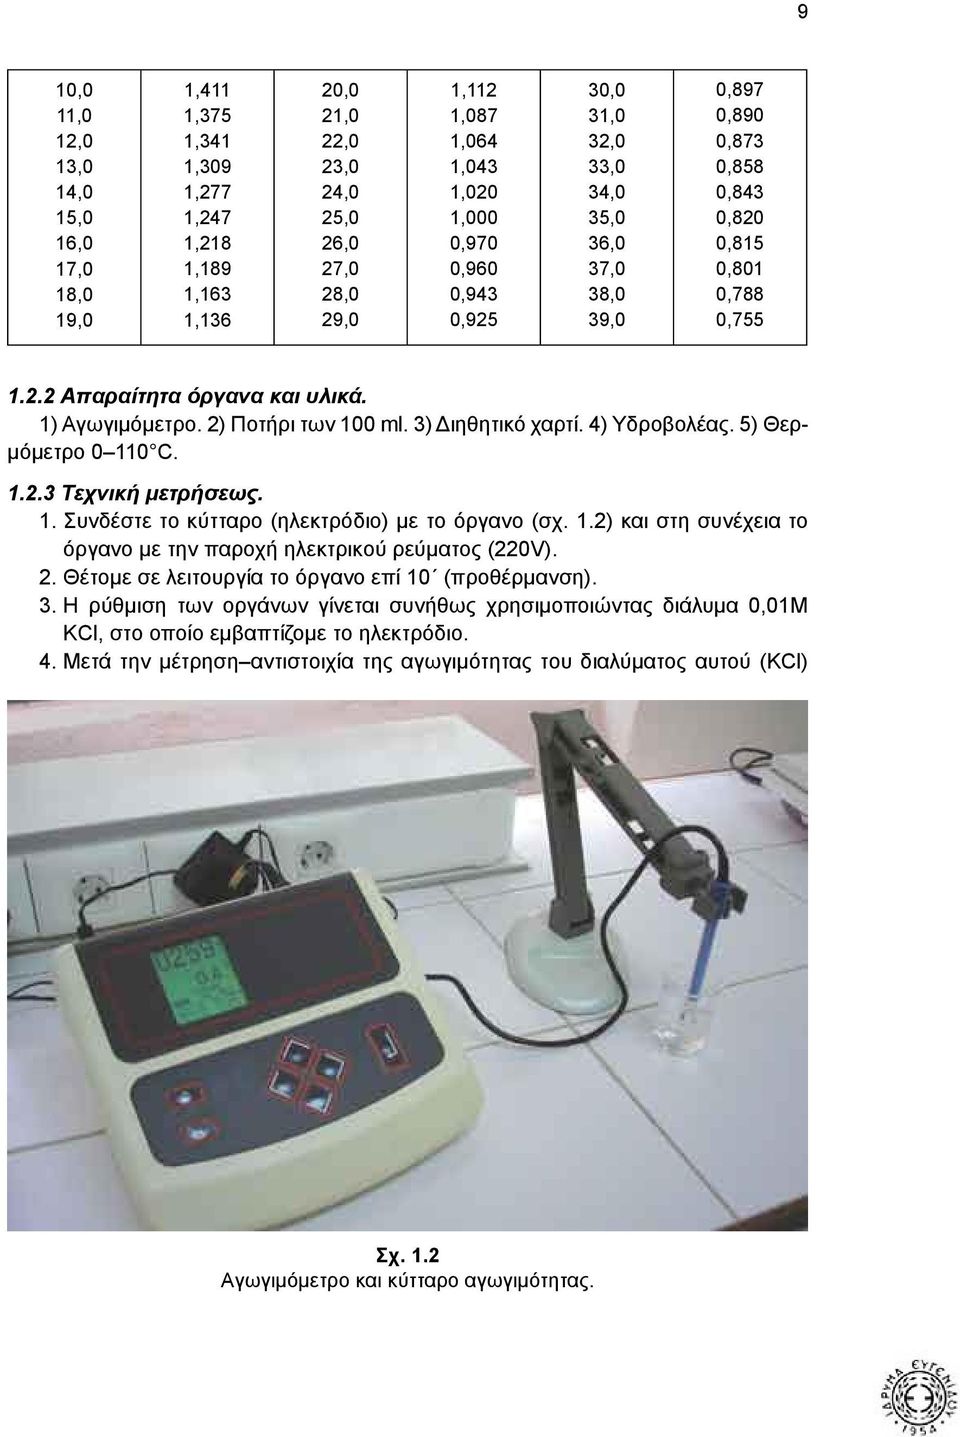 2) Ποτήρι των 100 ml. 3) Διηθητικό χαρτί. 4) Υδροβολέας. 5) Θερμόμετρο 0 110 C. 1.2.3 Τεχνική μετρήσεως. 1. Συνδέστε το κύτταρο (ηλεκτρόδιο) με το όργανο (σχ. 1.2) και στη συνέχεια το όργανο με την παροχή ηλεκτρικού ρεύματος (220V).